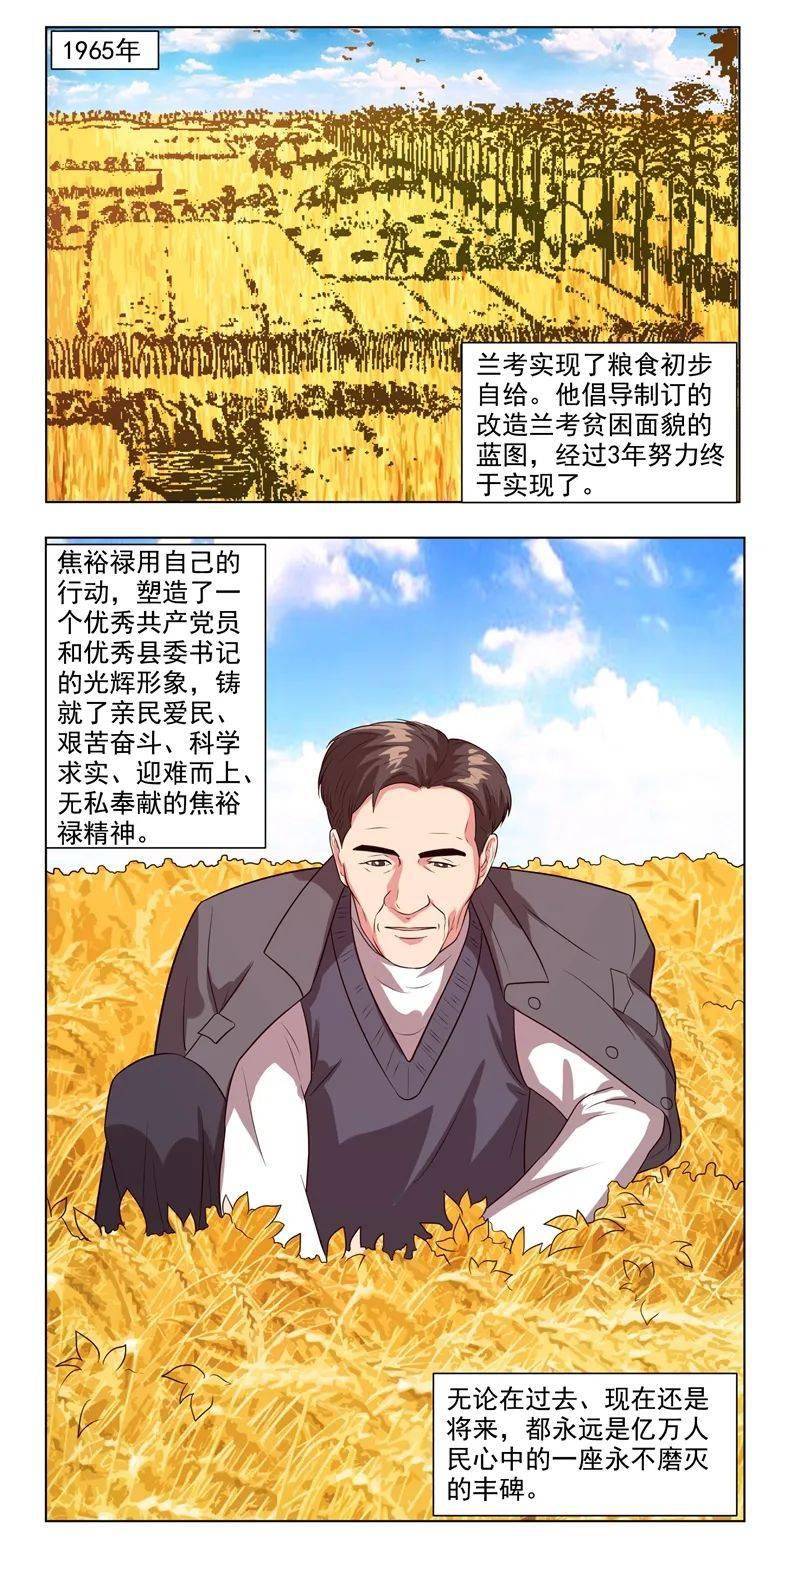 四史学习 | 漫说新中国史:县委书记的榜样 焦裕禄